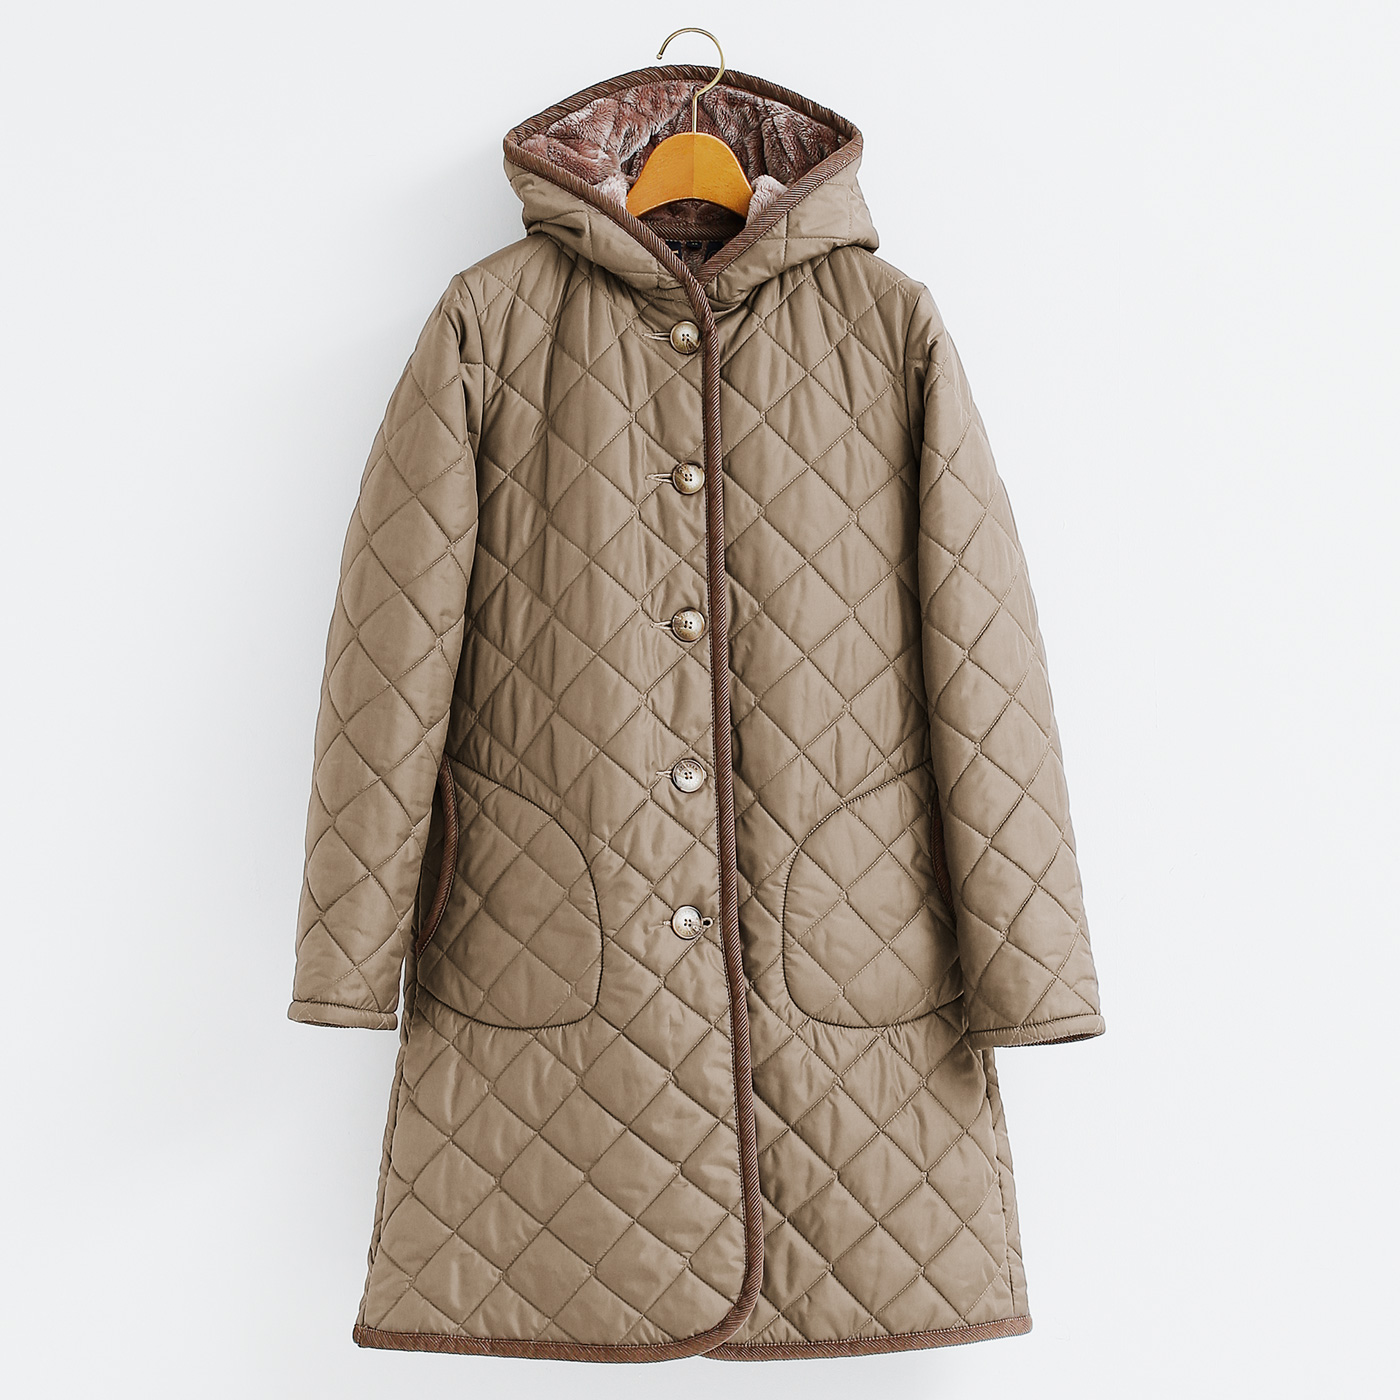 秋冬に着たい王道の英国式キルティングコート。ラベンハムの定番モデル 